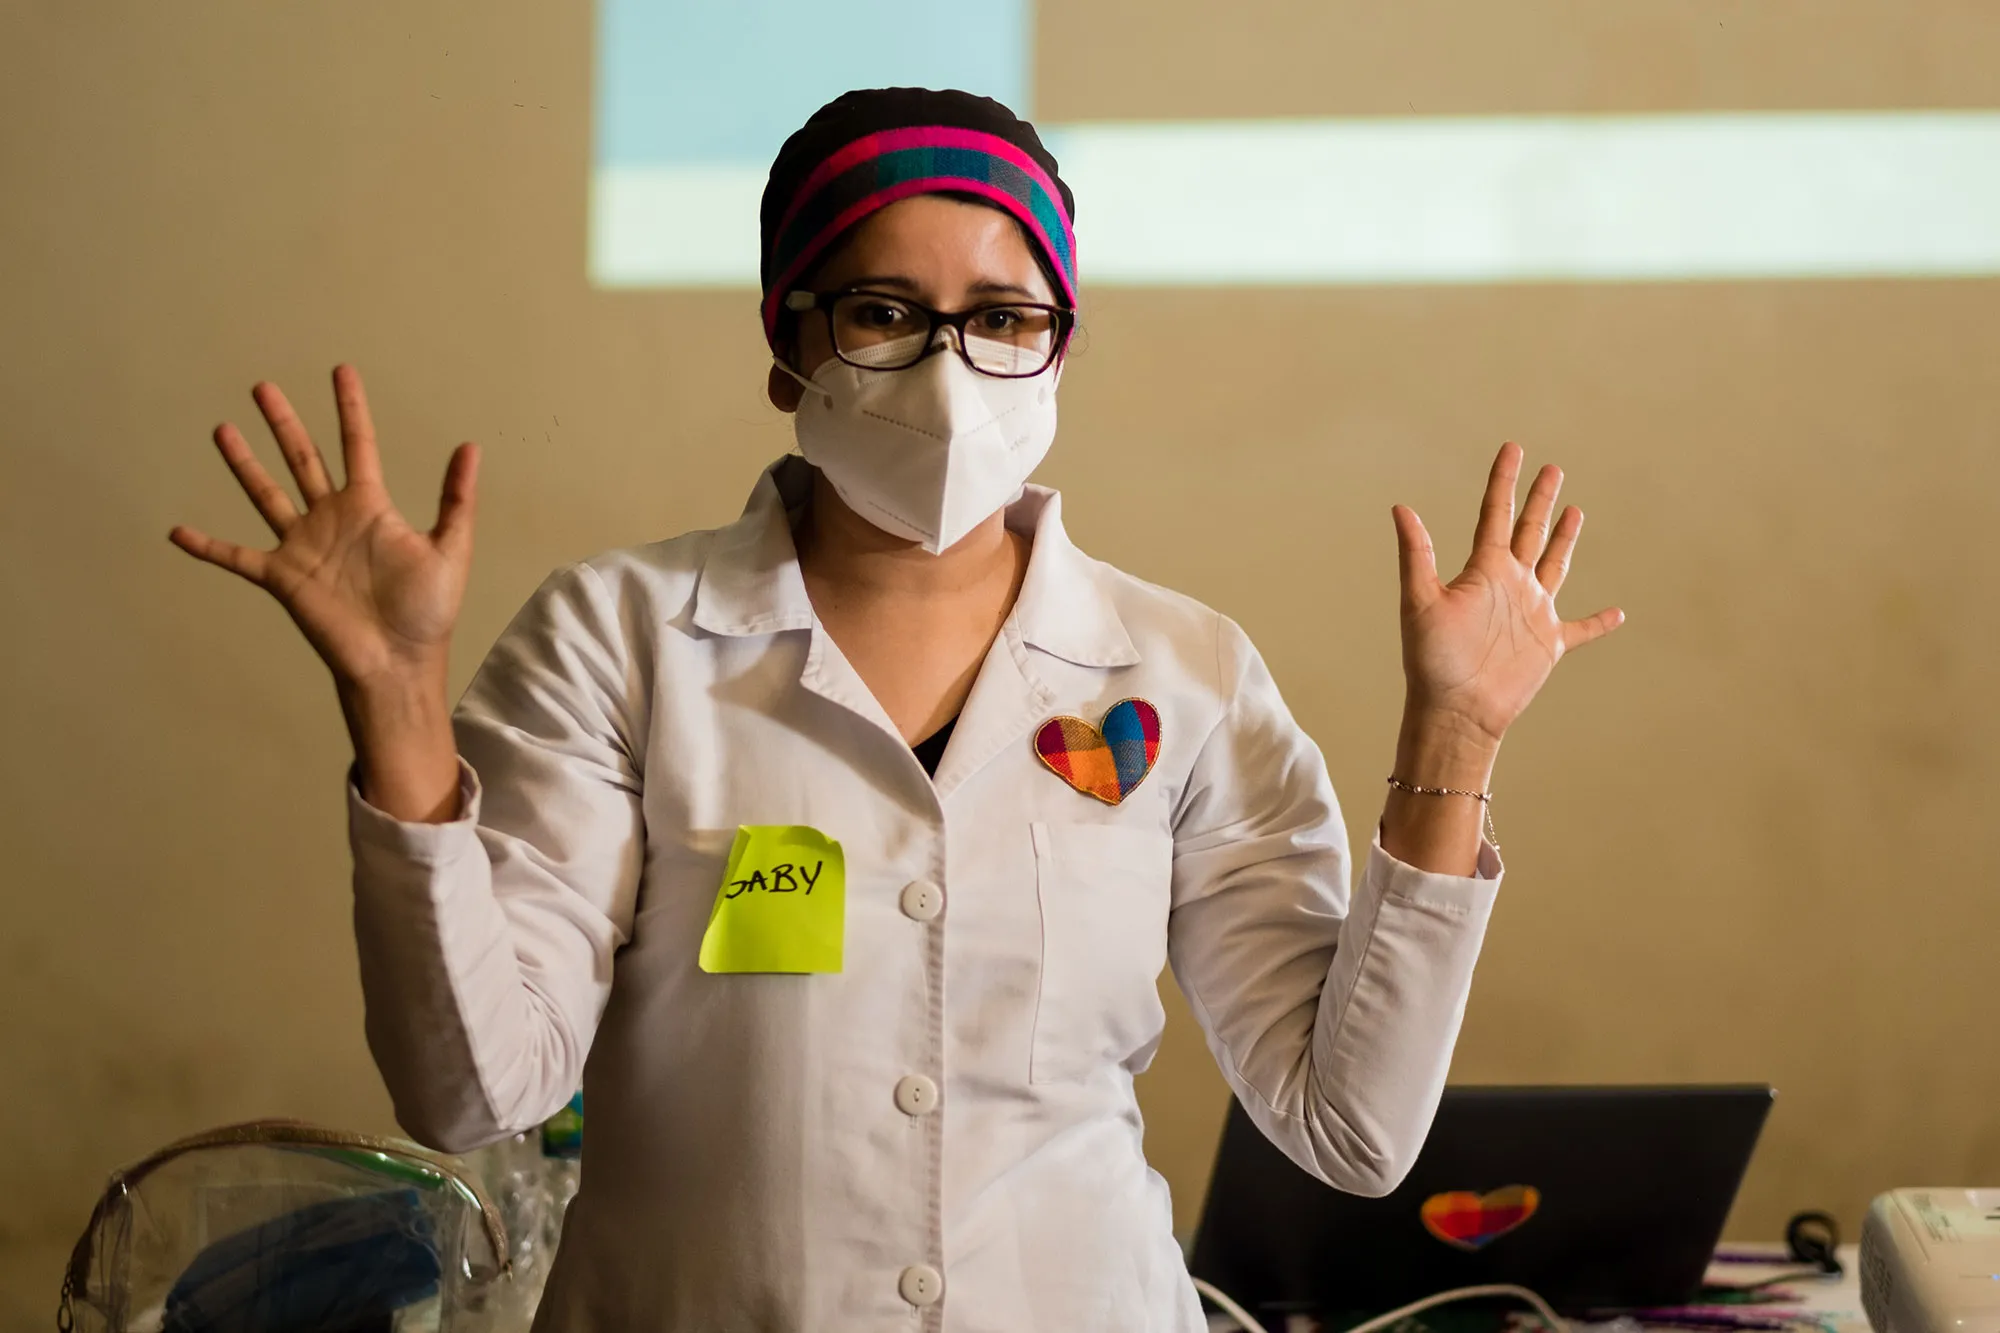 una mujer con una bata de laboratorio y una máscara quirúrgica habla con las manos en alto.